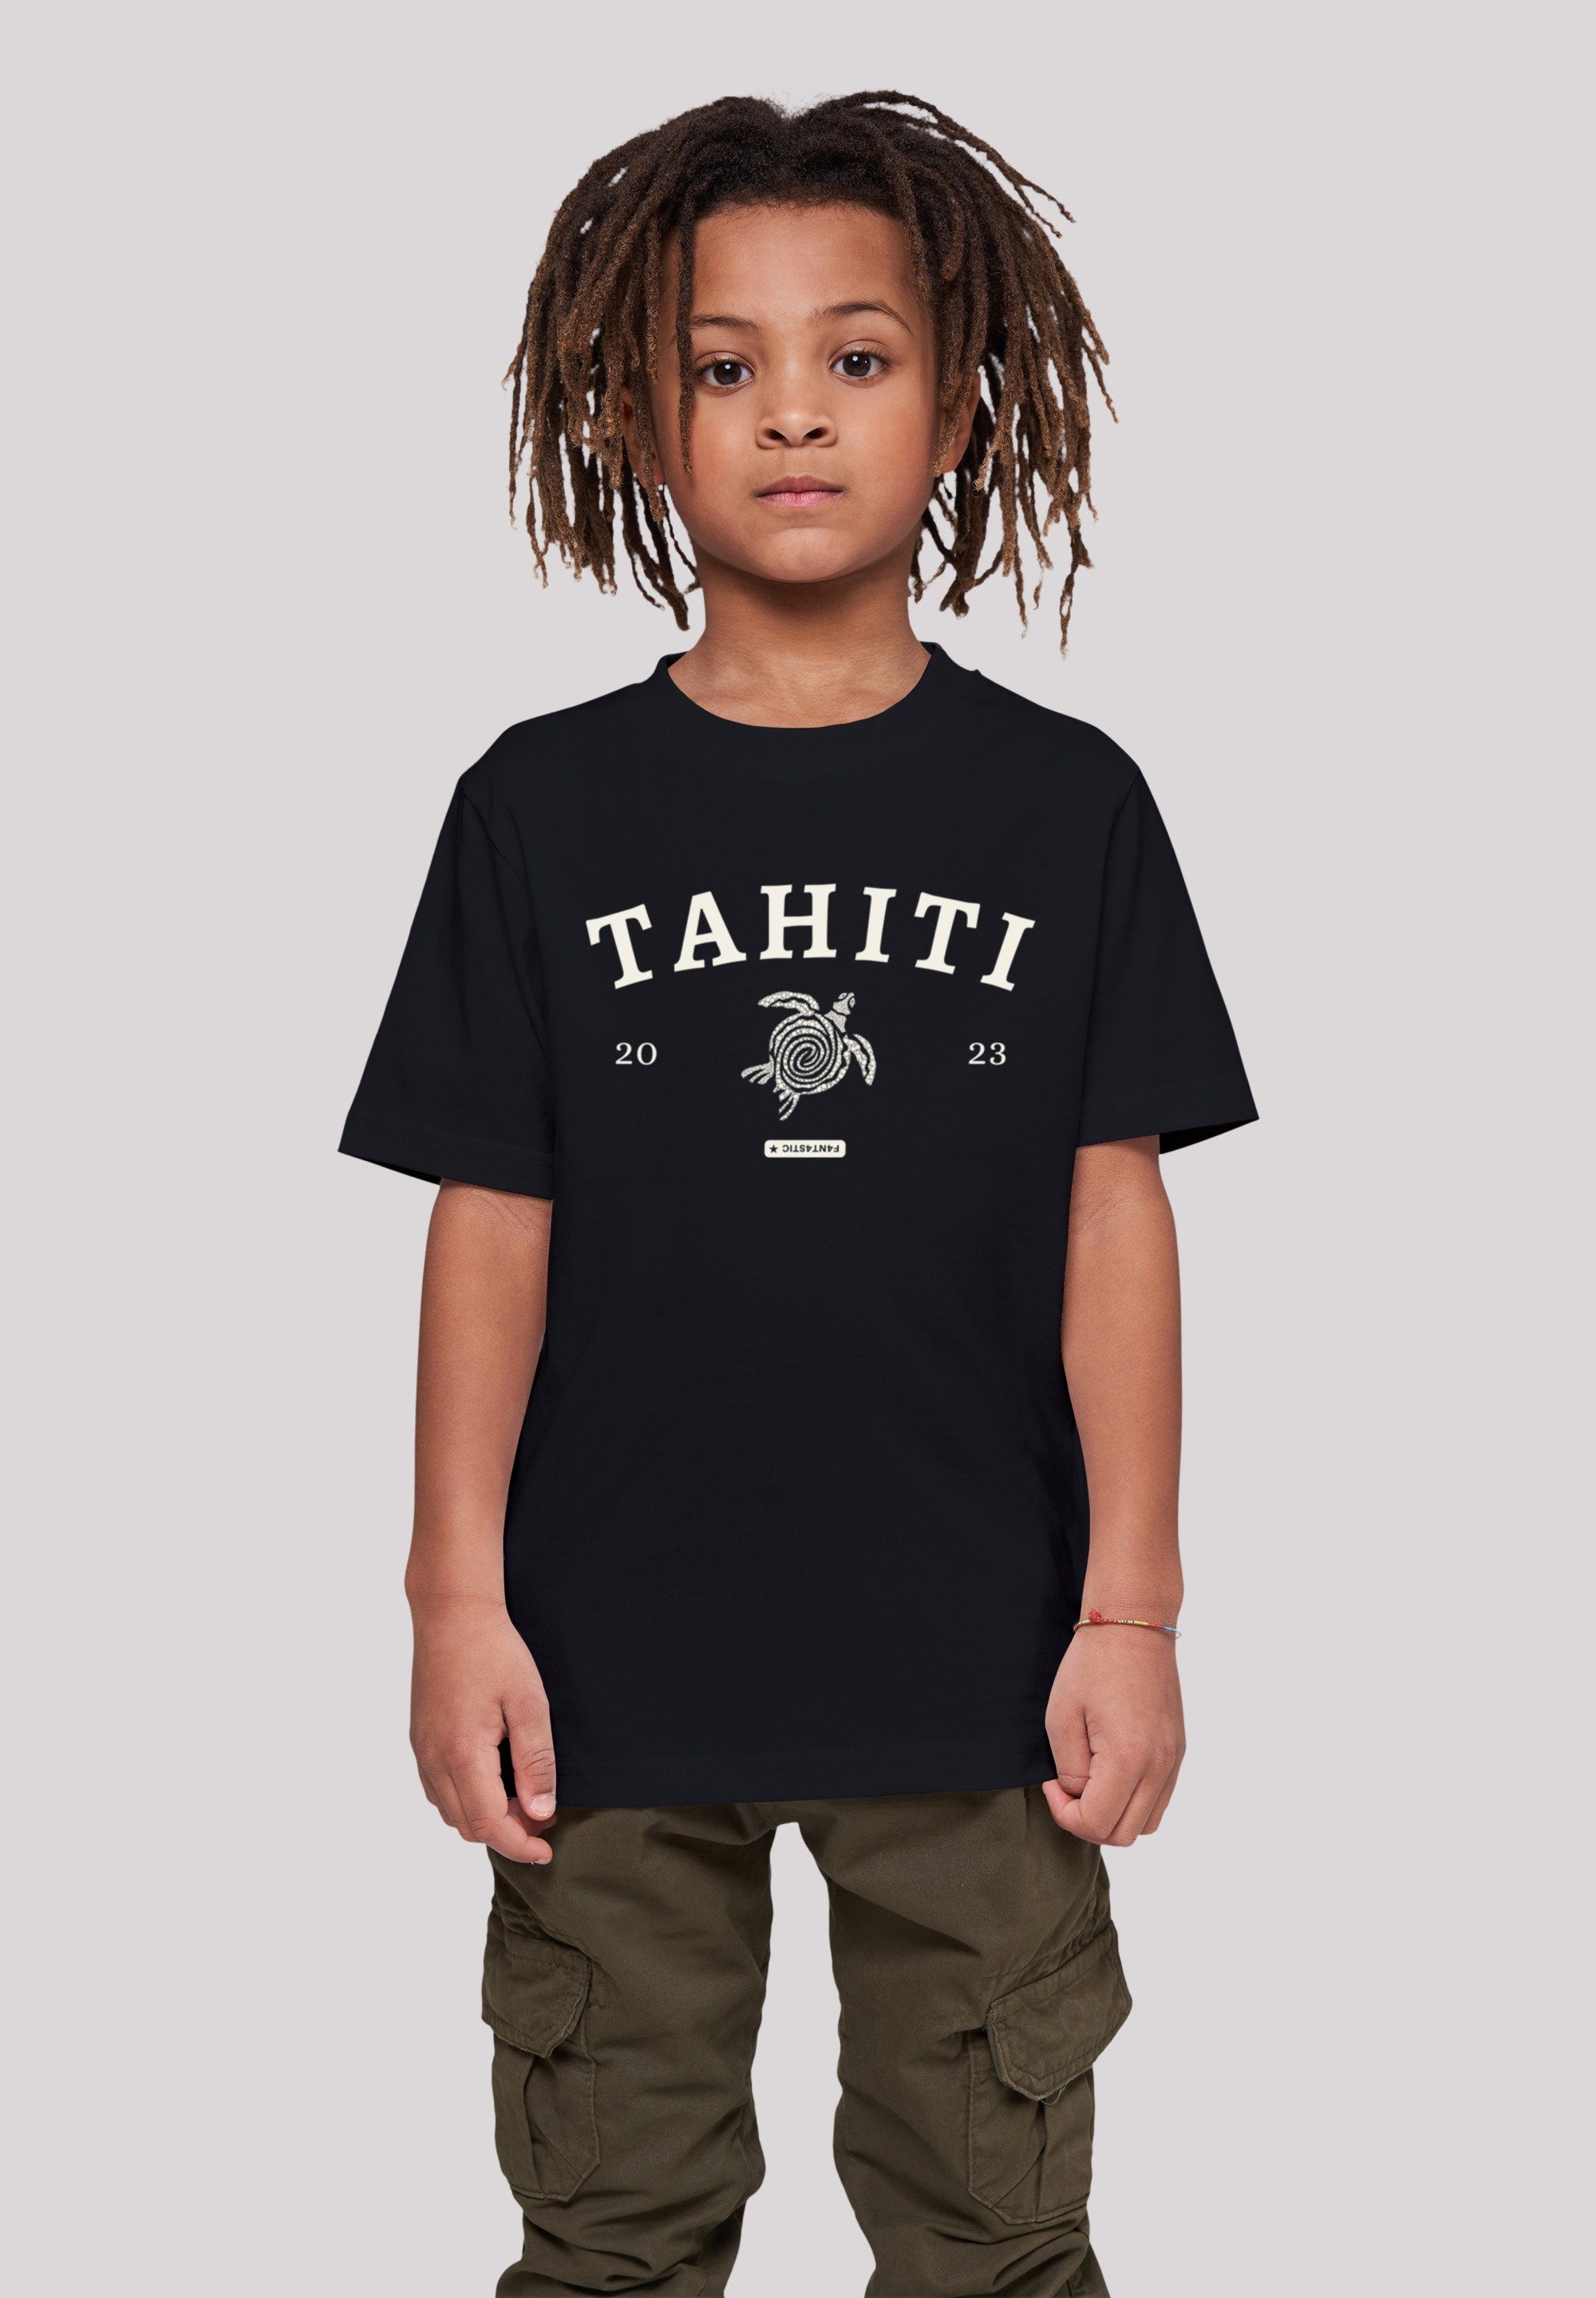 F4NT4STIC Sehr Print, Baumwollstoff weicher T-Shirt Tahiti Tragekomfort hohem mit